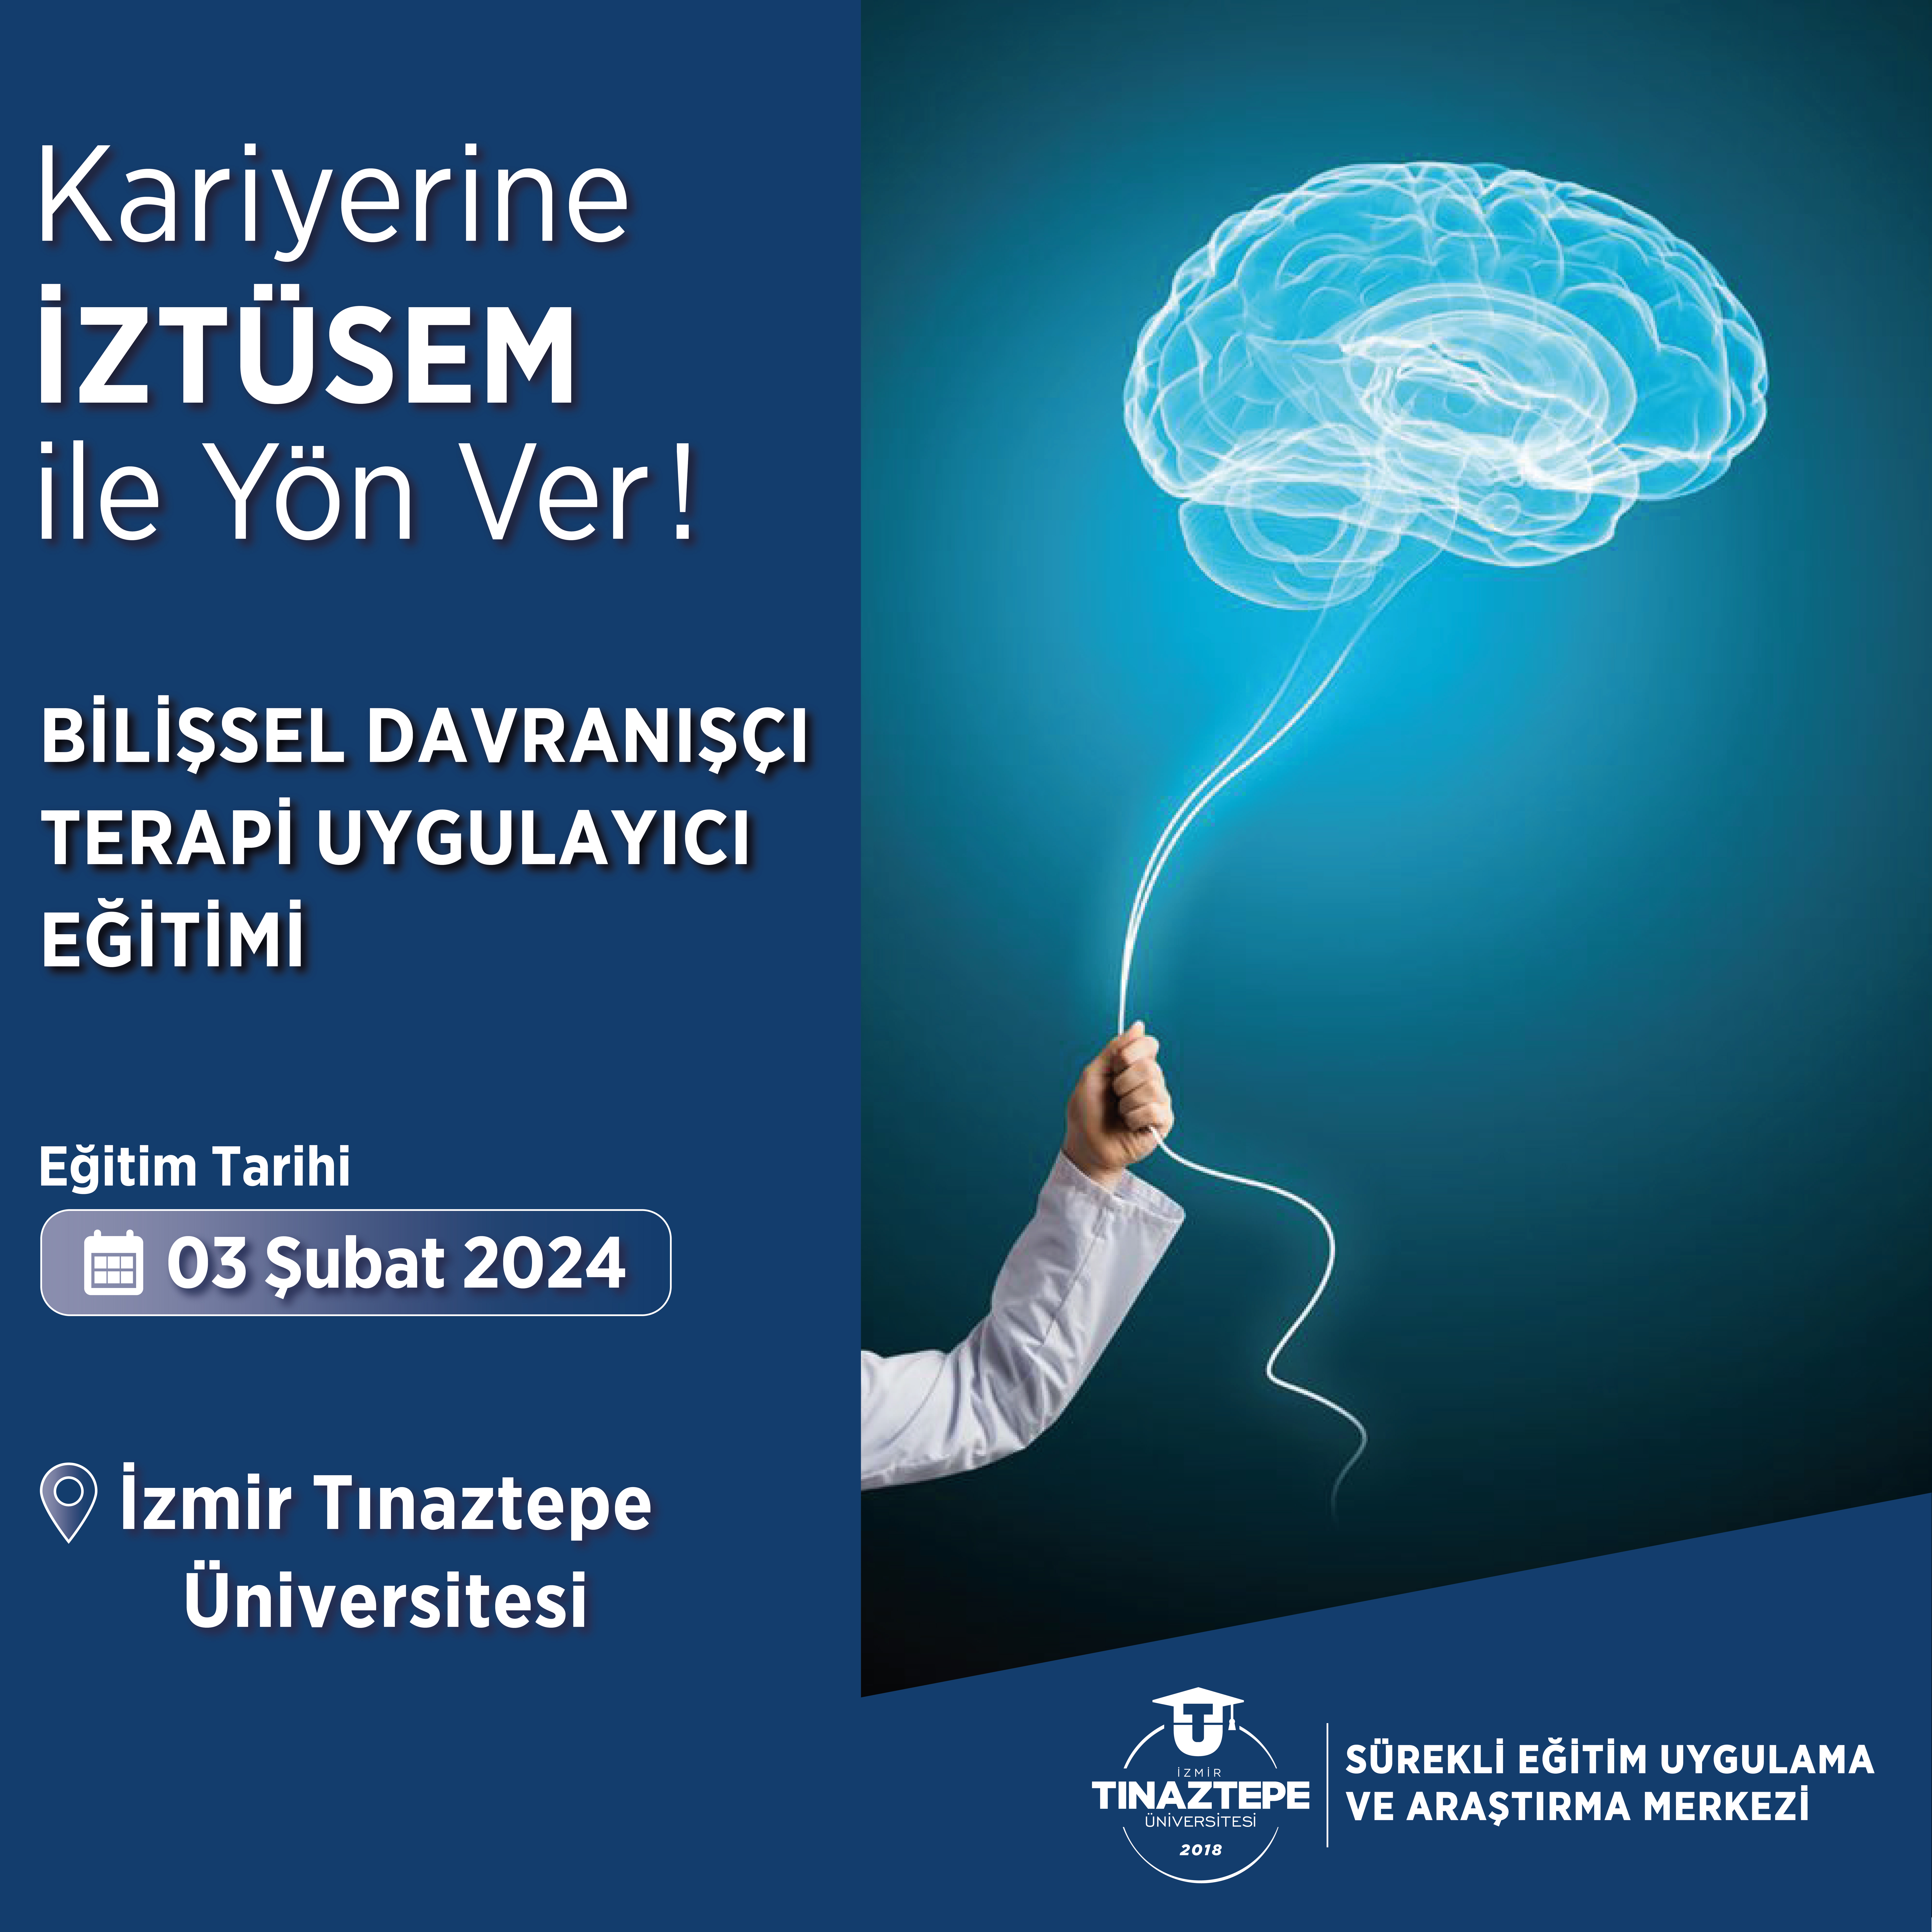 İzmir Tınaztepe Üniversitesi Bilişsel Davranışçı Terapi Uygulayıcı Eğitimi